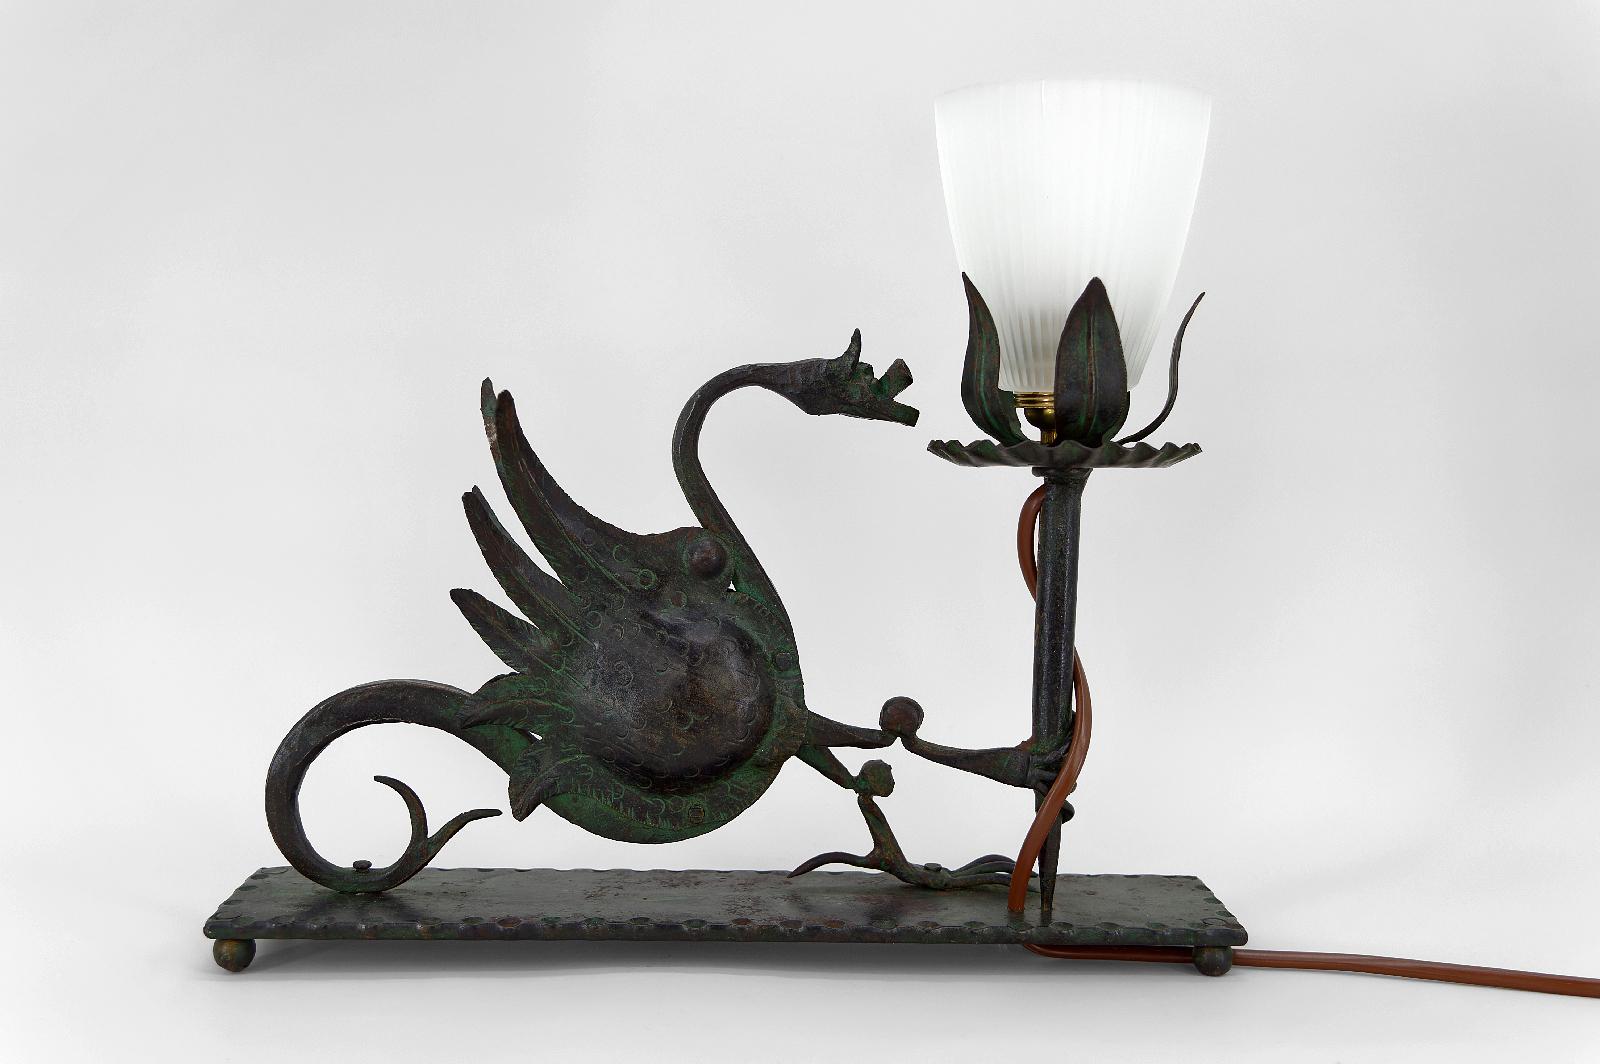 Elegant lampe de table / bureau en fer forgé, représentant un dragon ailé tenant une torche / torchère. 

Beau travail du métal : sujet bien réalisé, belle patine vert-de-gris.

Style néo-gothique / néo-gothique / Art nouveau, Italie, vers